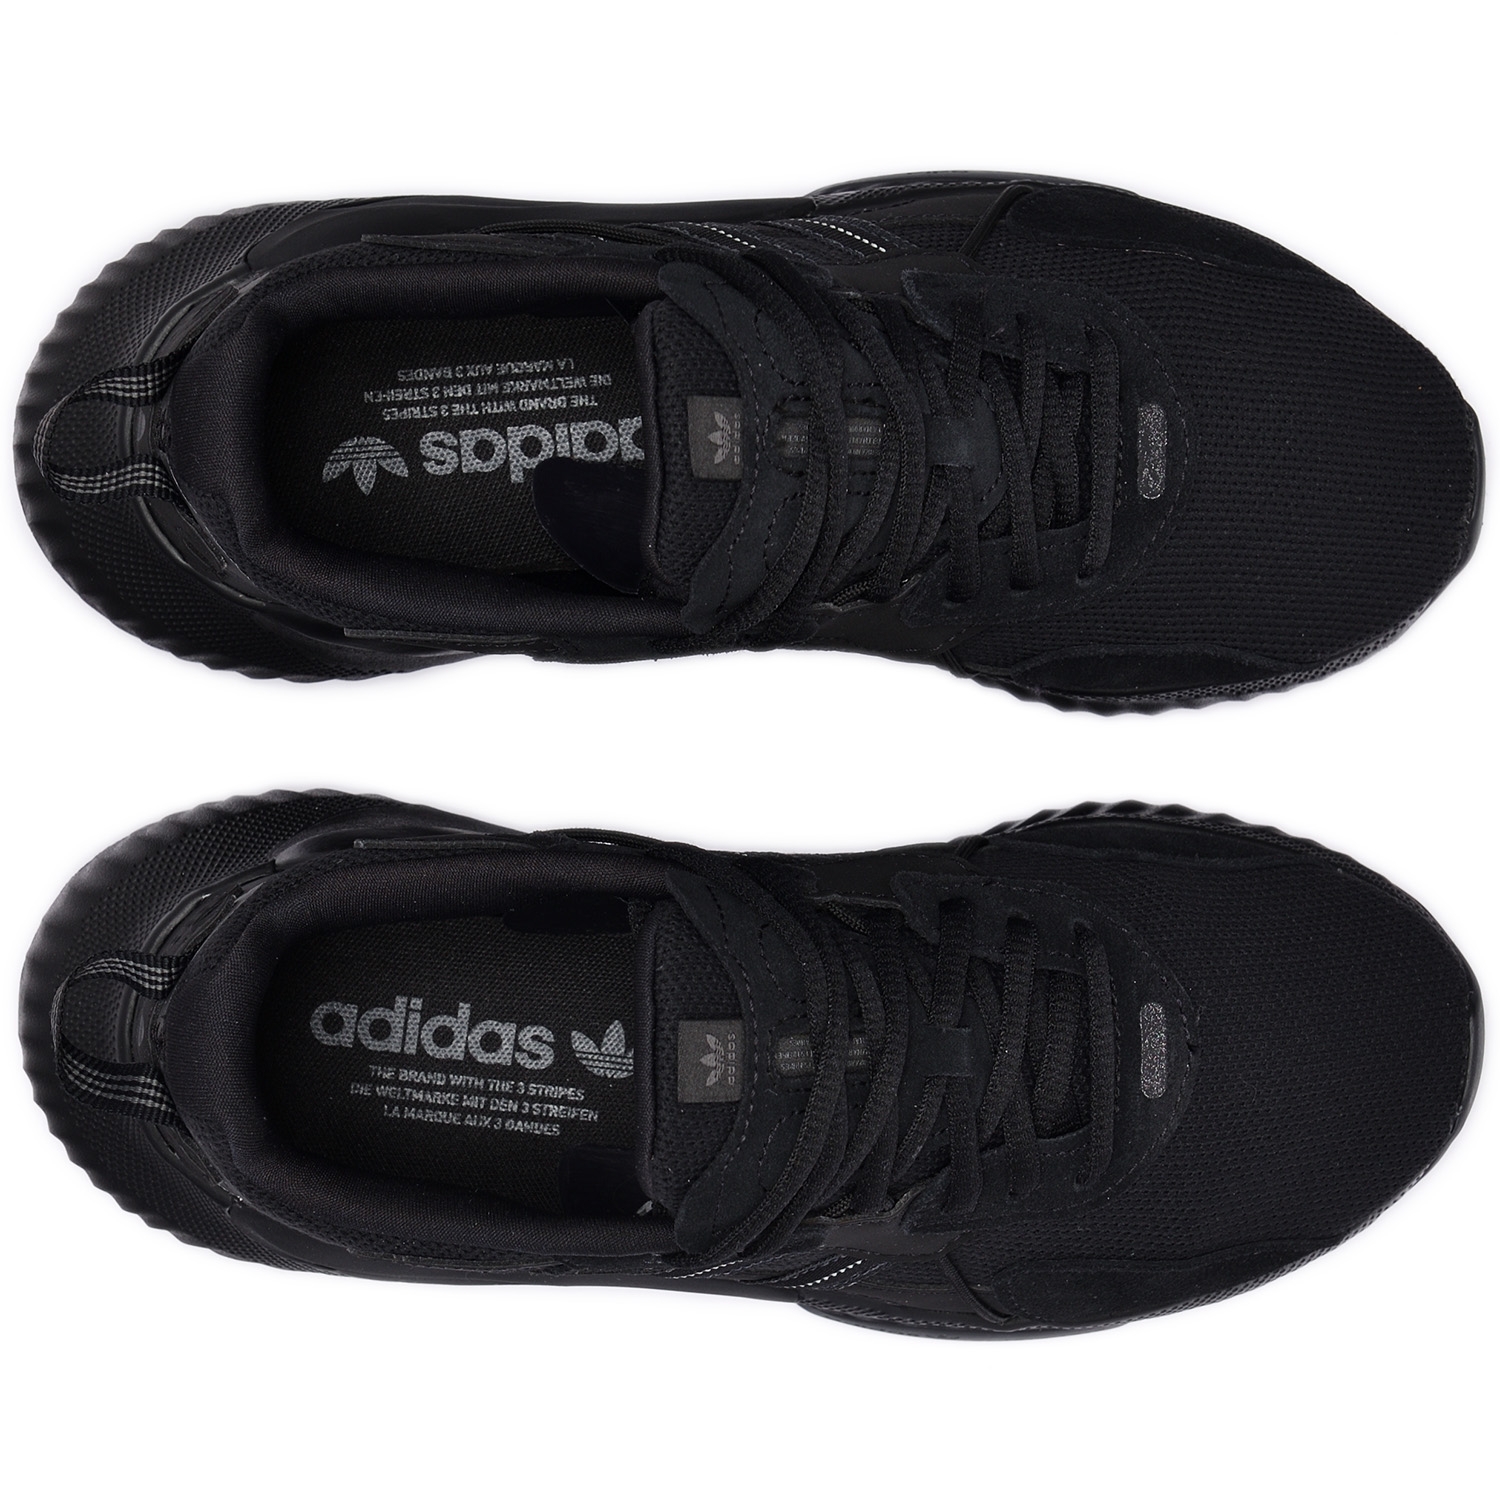 adidas Originals HI-TAIL. Core Black / Core Black / Grey Six